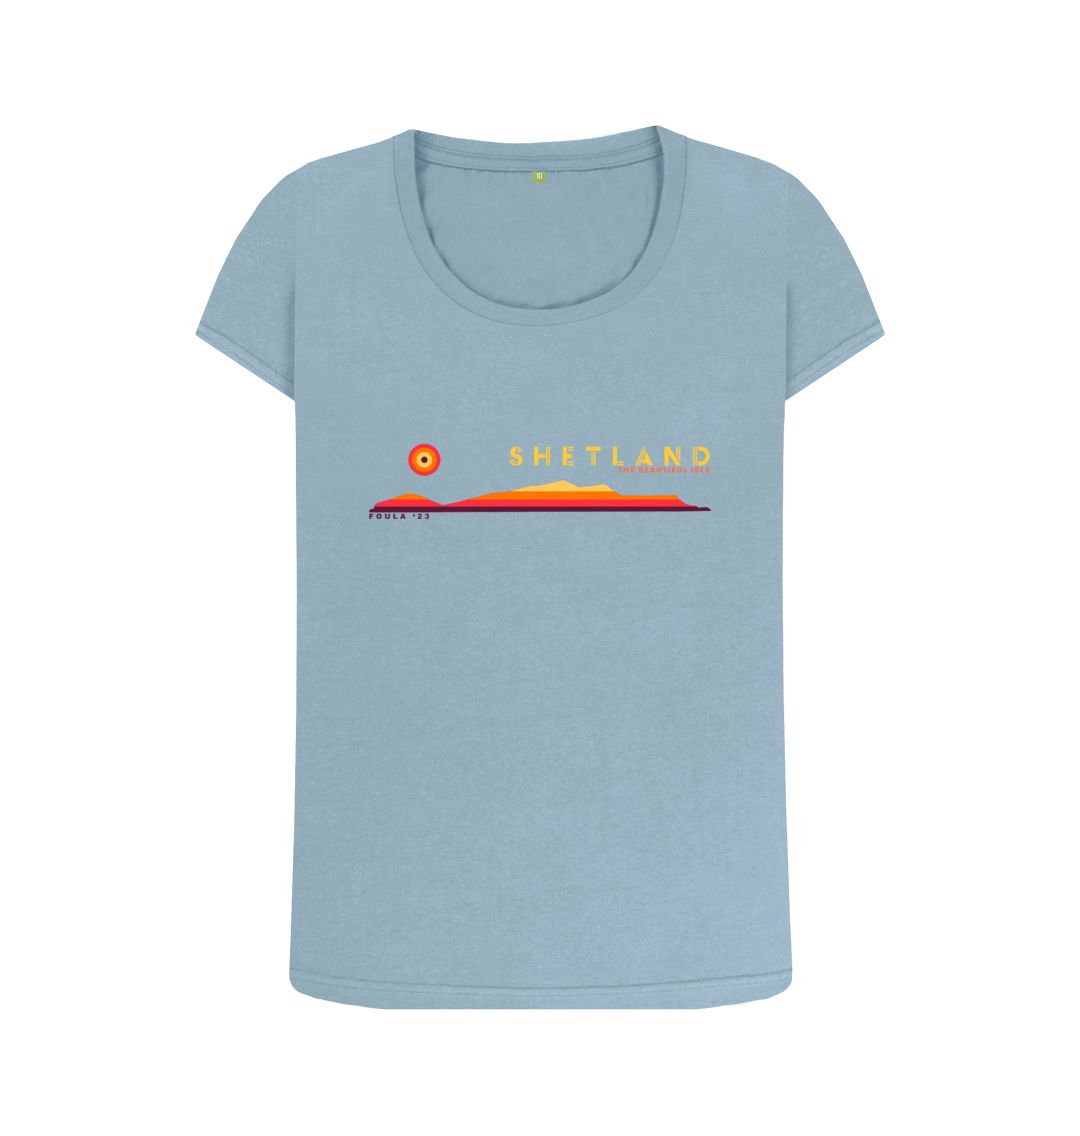 Stone Blue Foula Sunset Womans T-shirt | Shetland, The Beautiful Isle